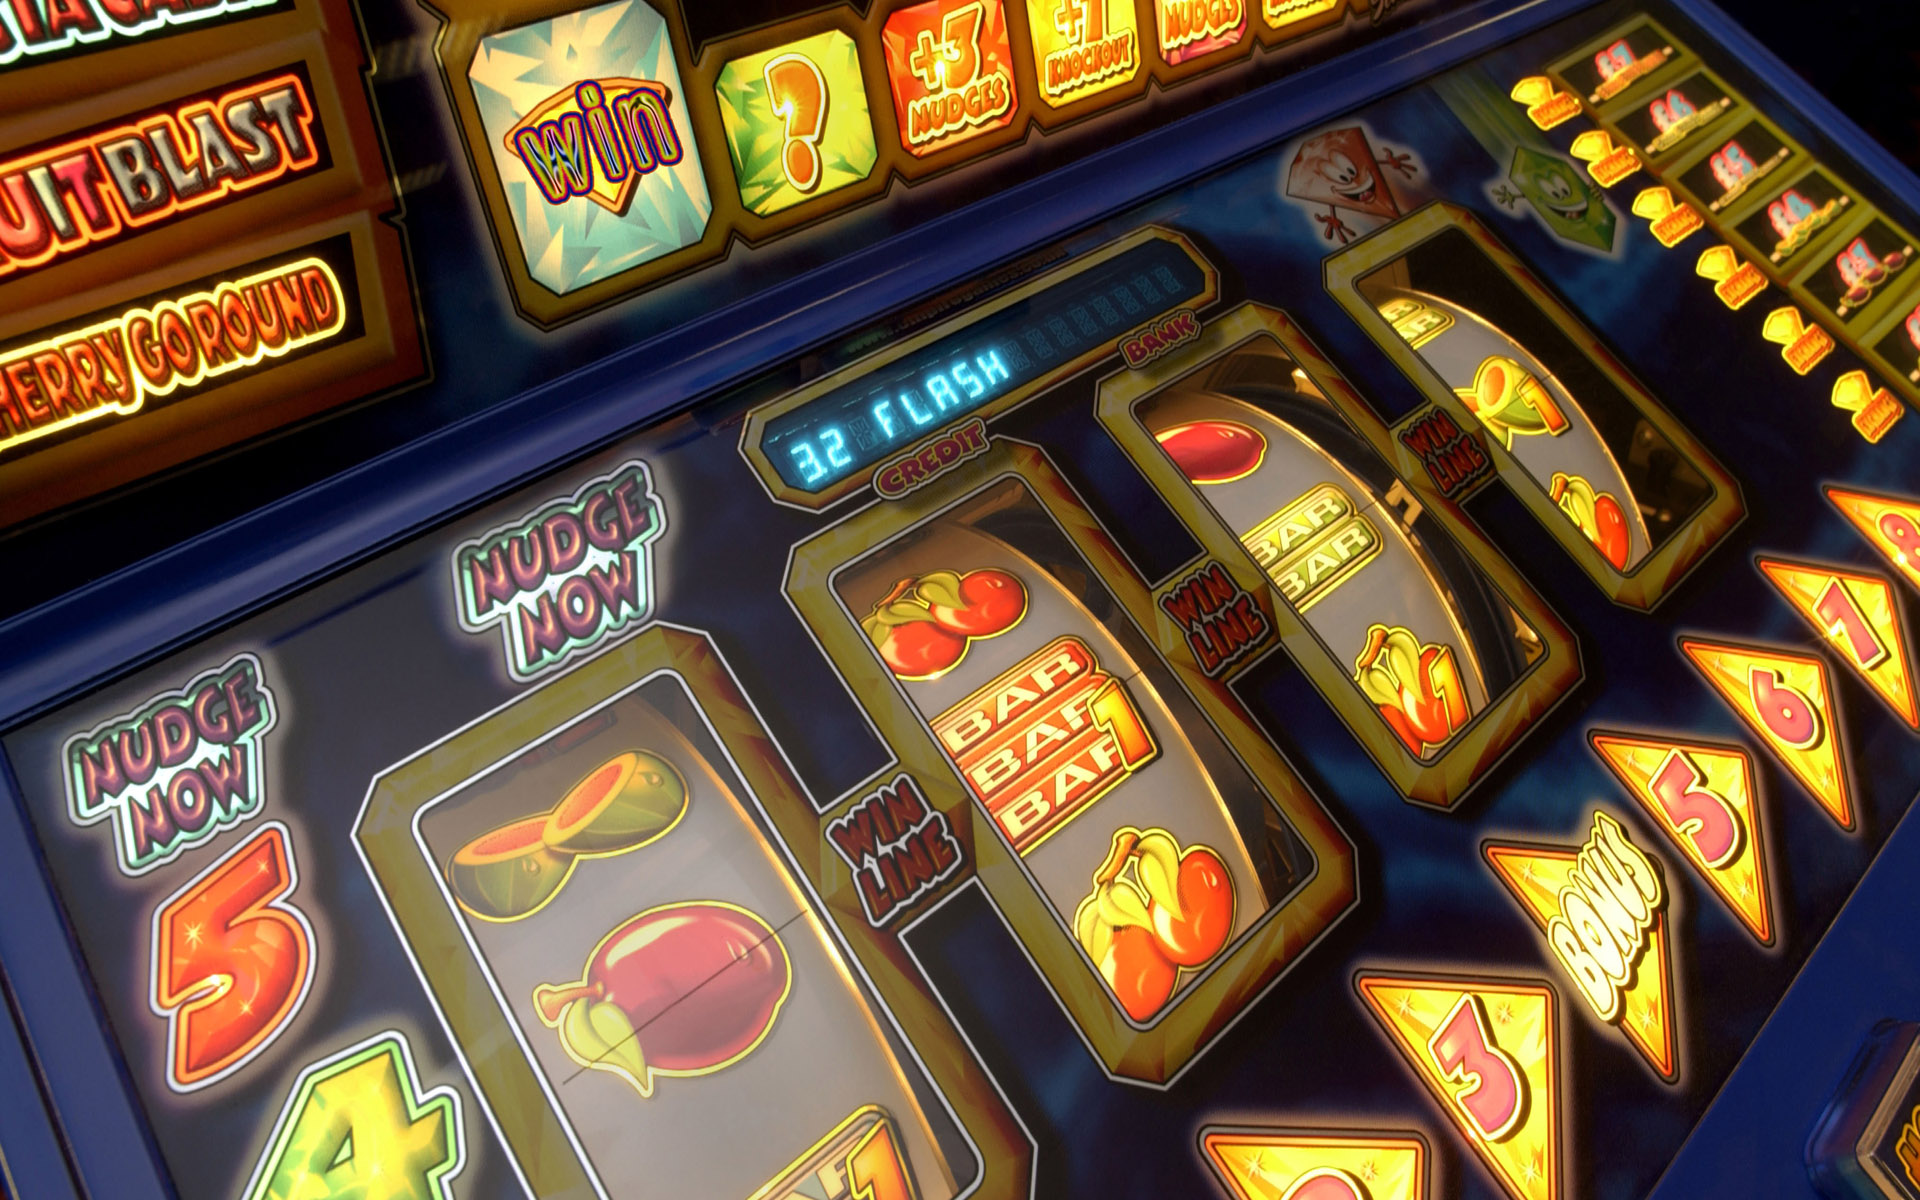 Слоты в казино онлайн: испытайте удачу и ощутите азарт игры